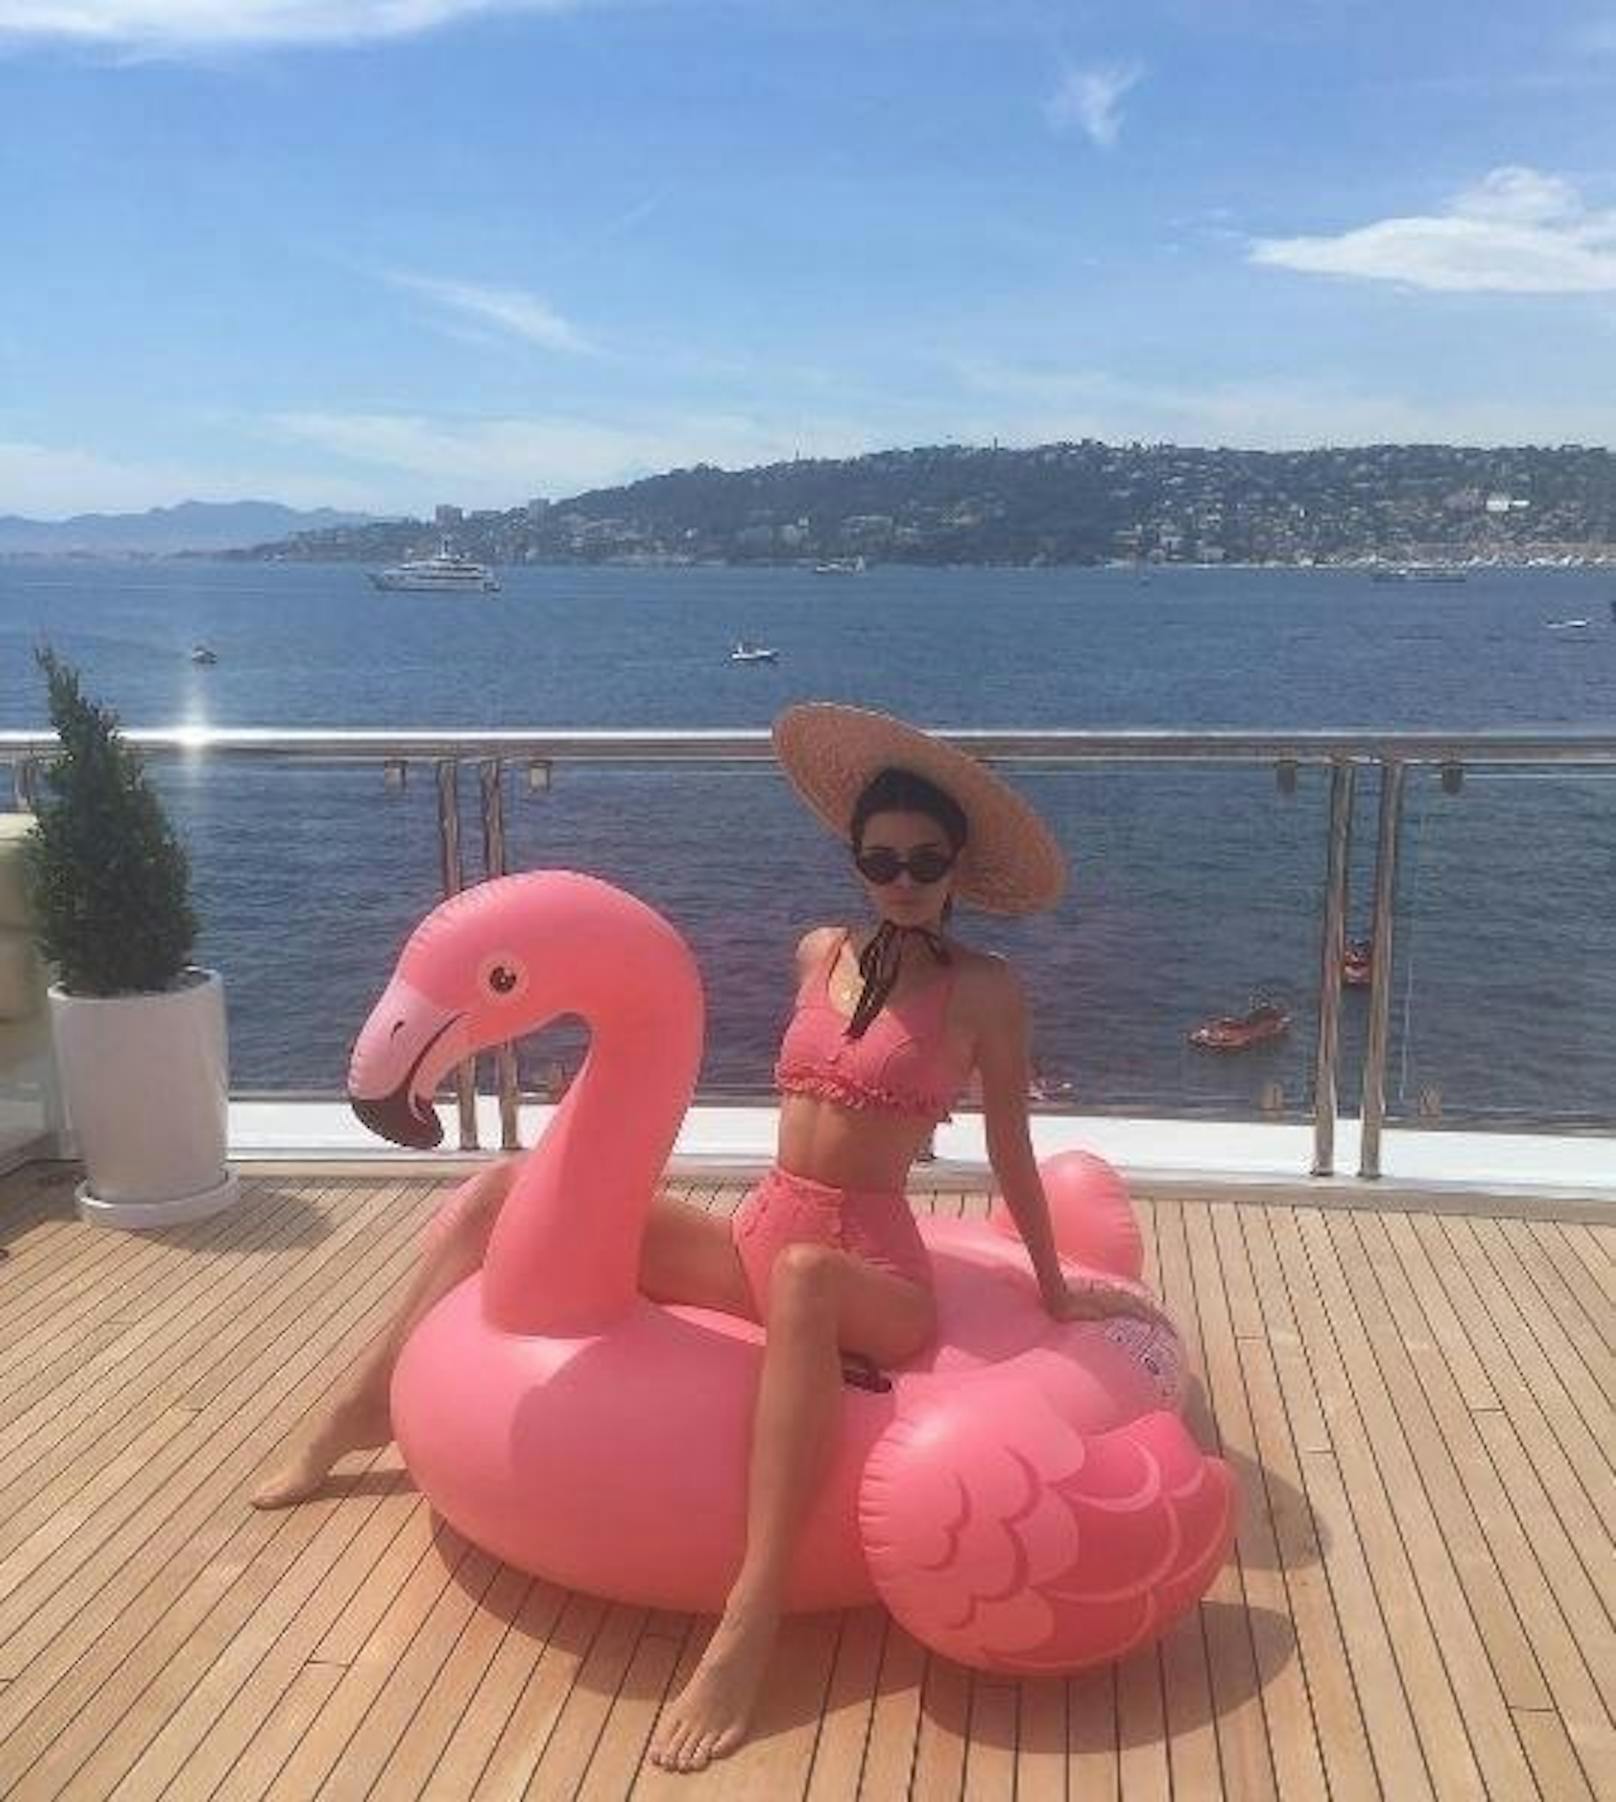 25.05.2017: Kendall Jenner sonnt sich in einem rosa Bikini und mit Sonnenhut auf einer Flamingo-Luftmatratze